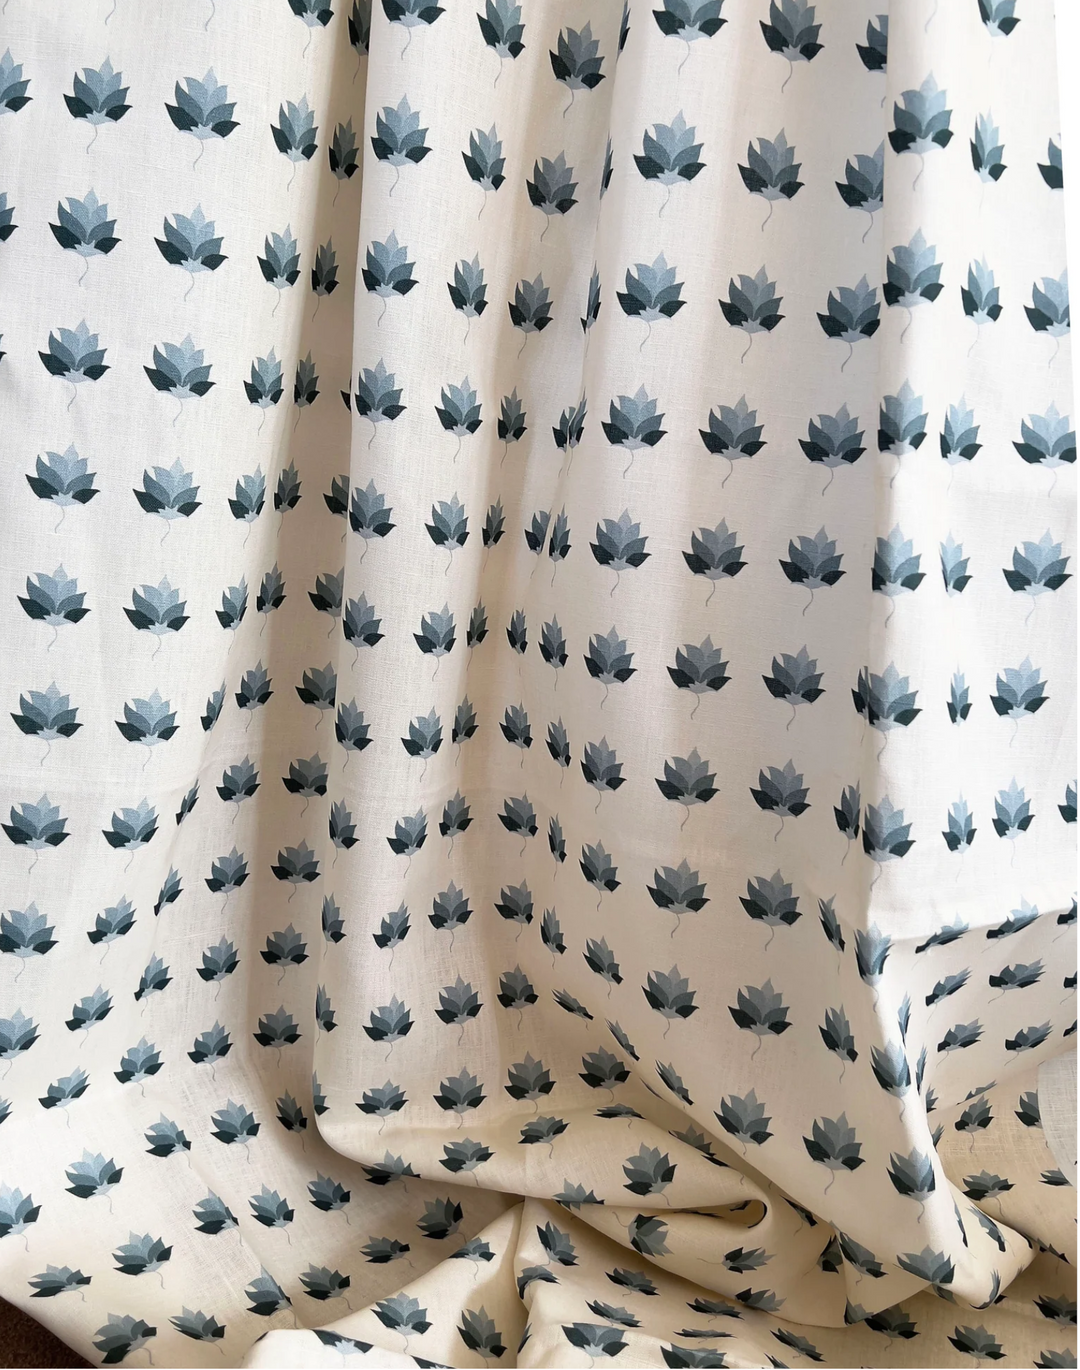 Kashi Fabric, Indigo Blue